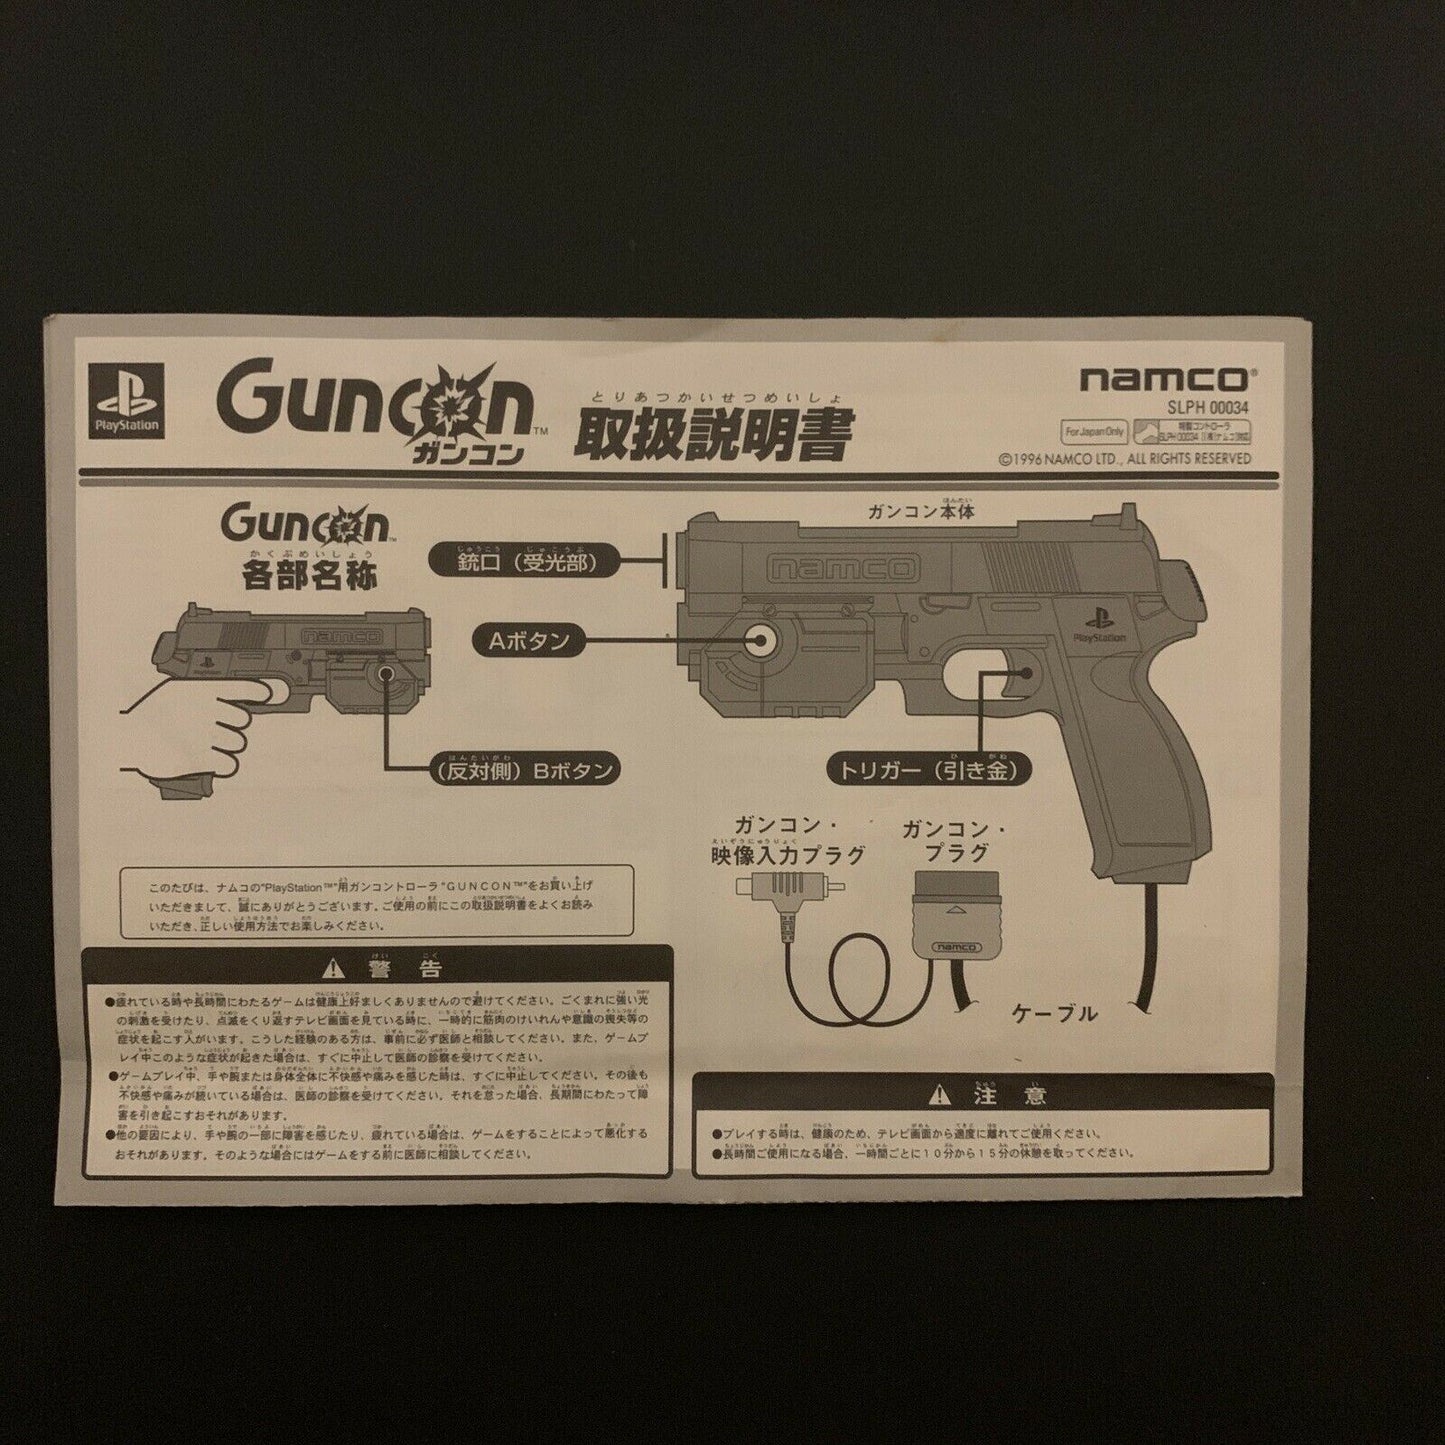 Official Namco Guncon 1 PlayStation Original Boxed PS1 Gun Controller NPC-103